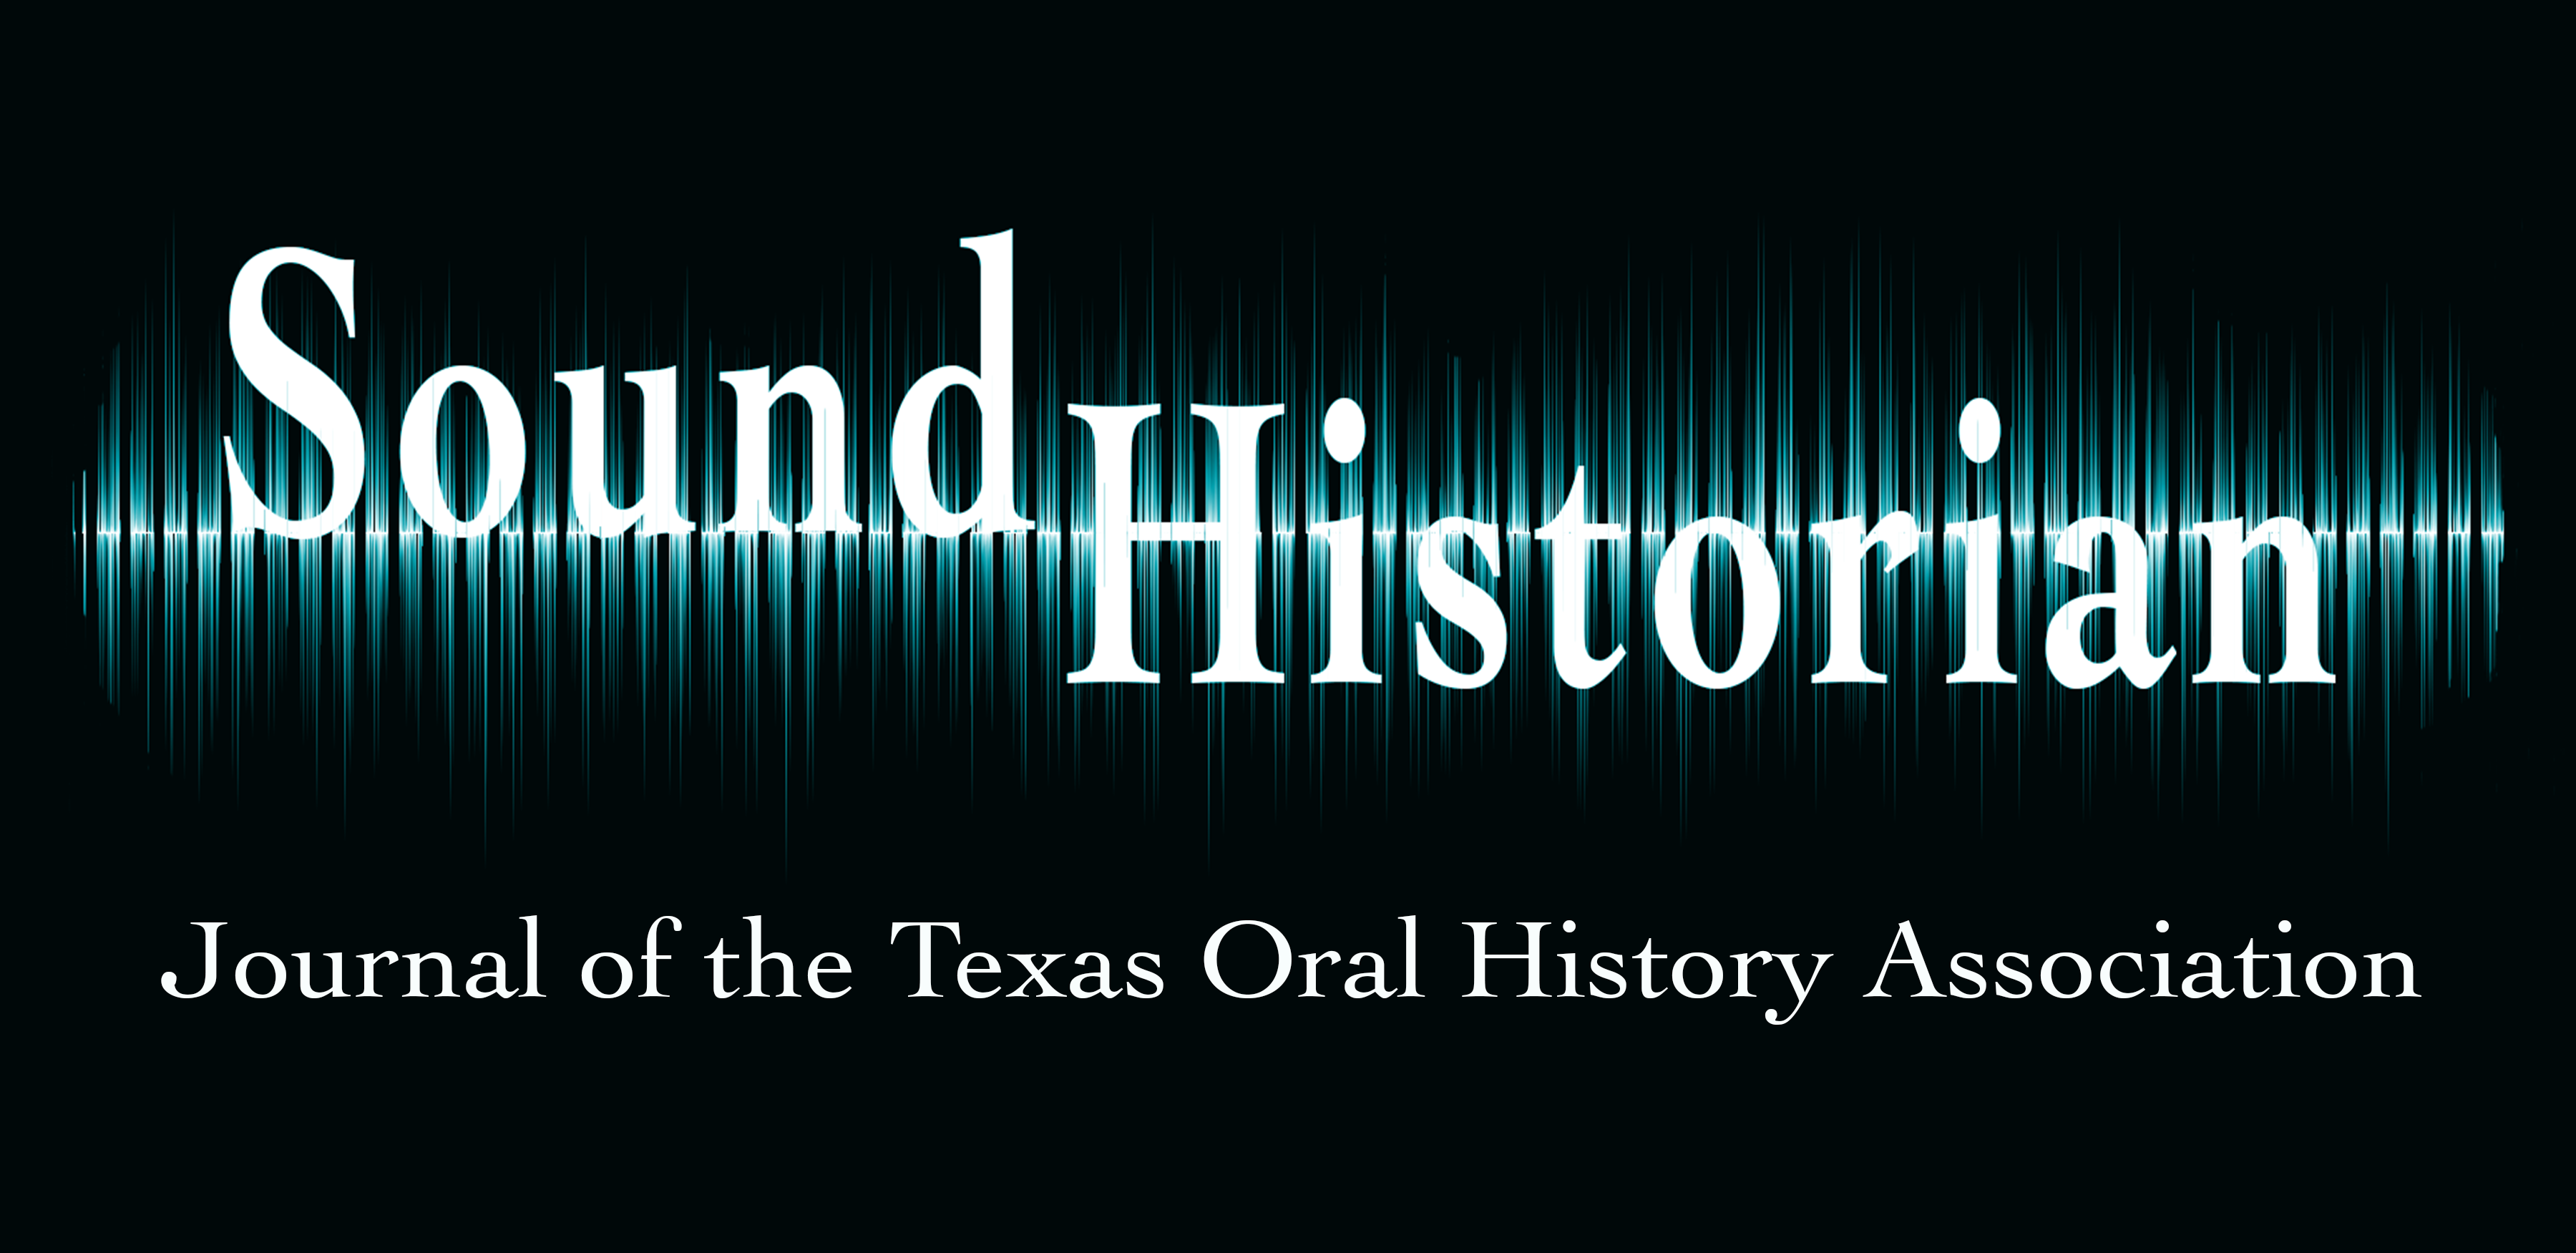 Sound Historian journal header image